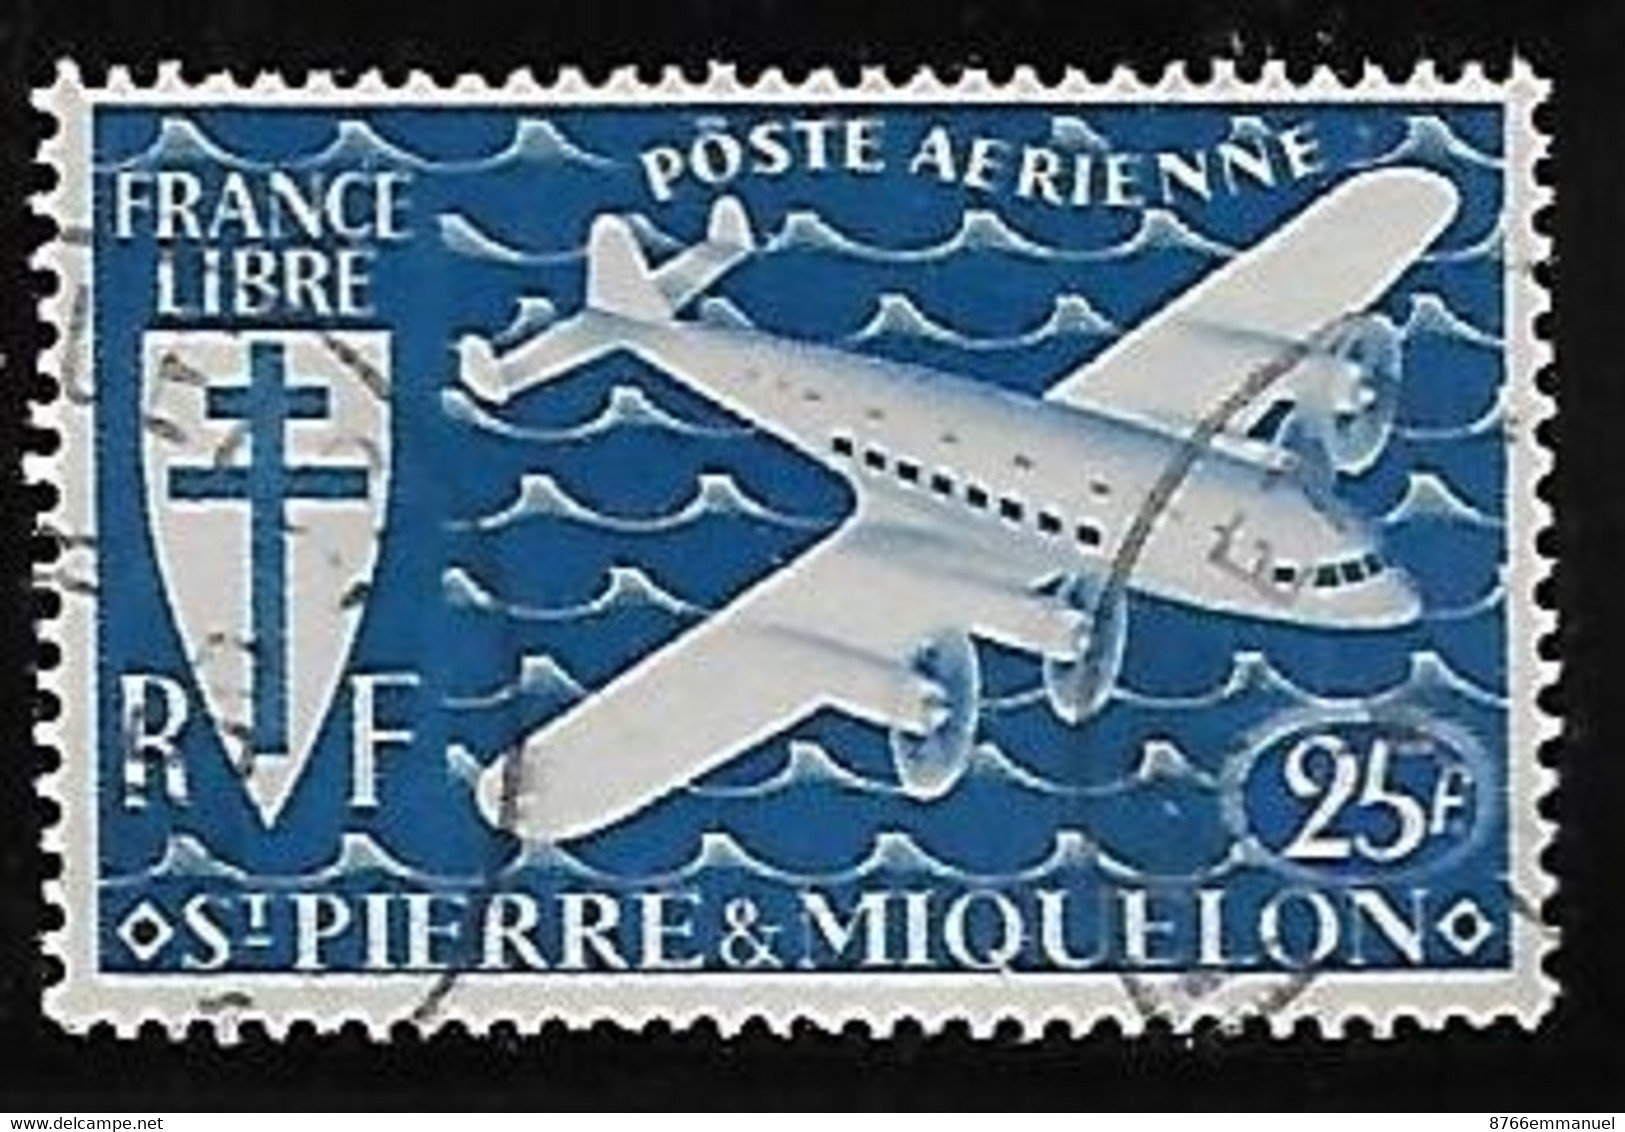 SAINT-PIERRE-ET-MIQUELON AERIEN N°8 - Used Stamps